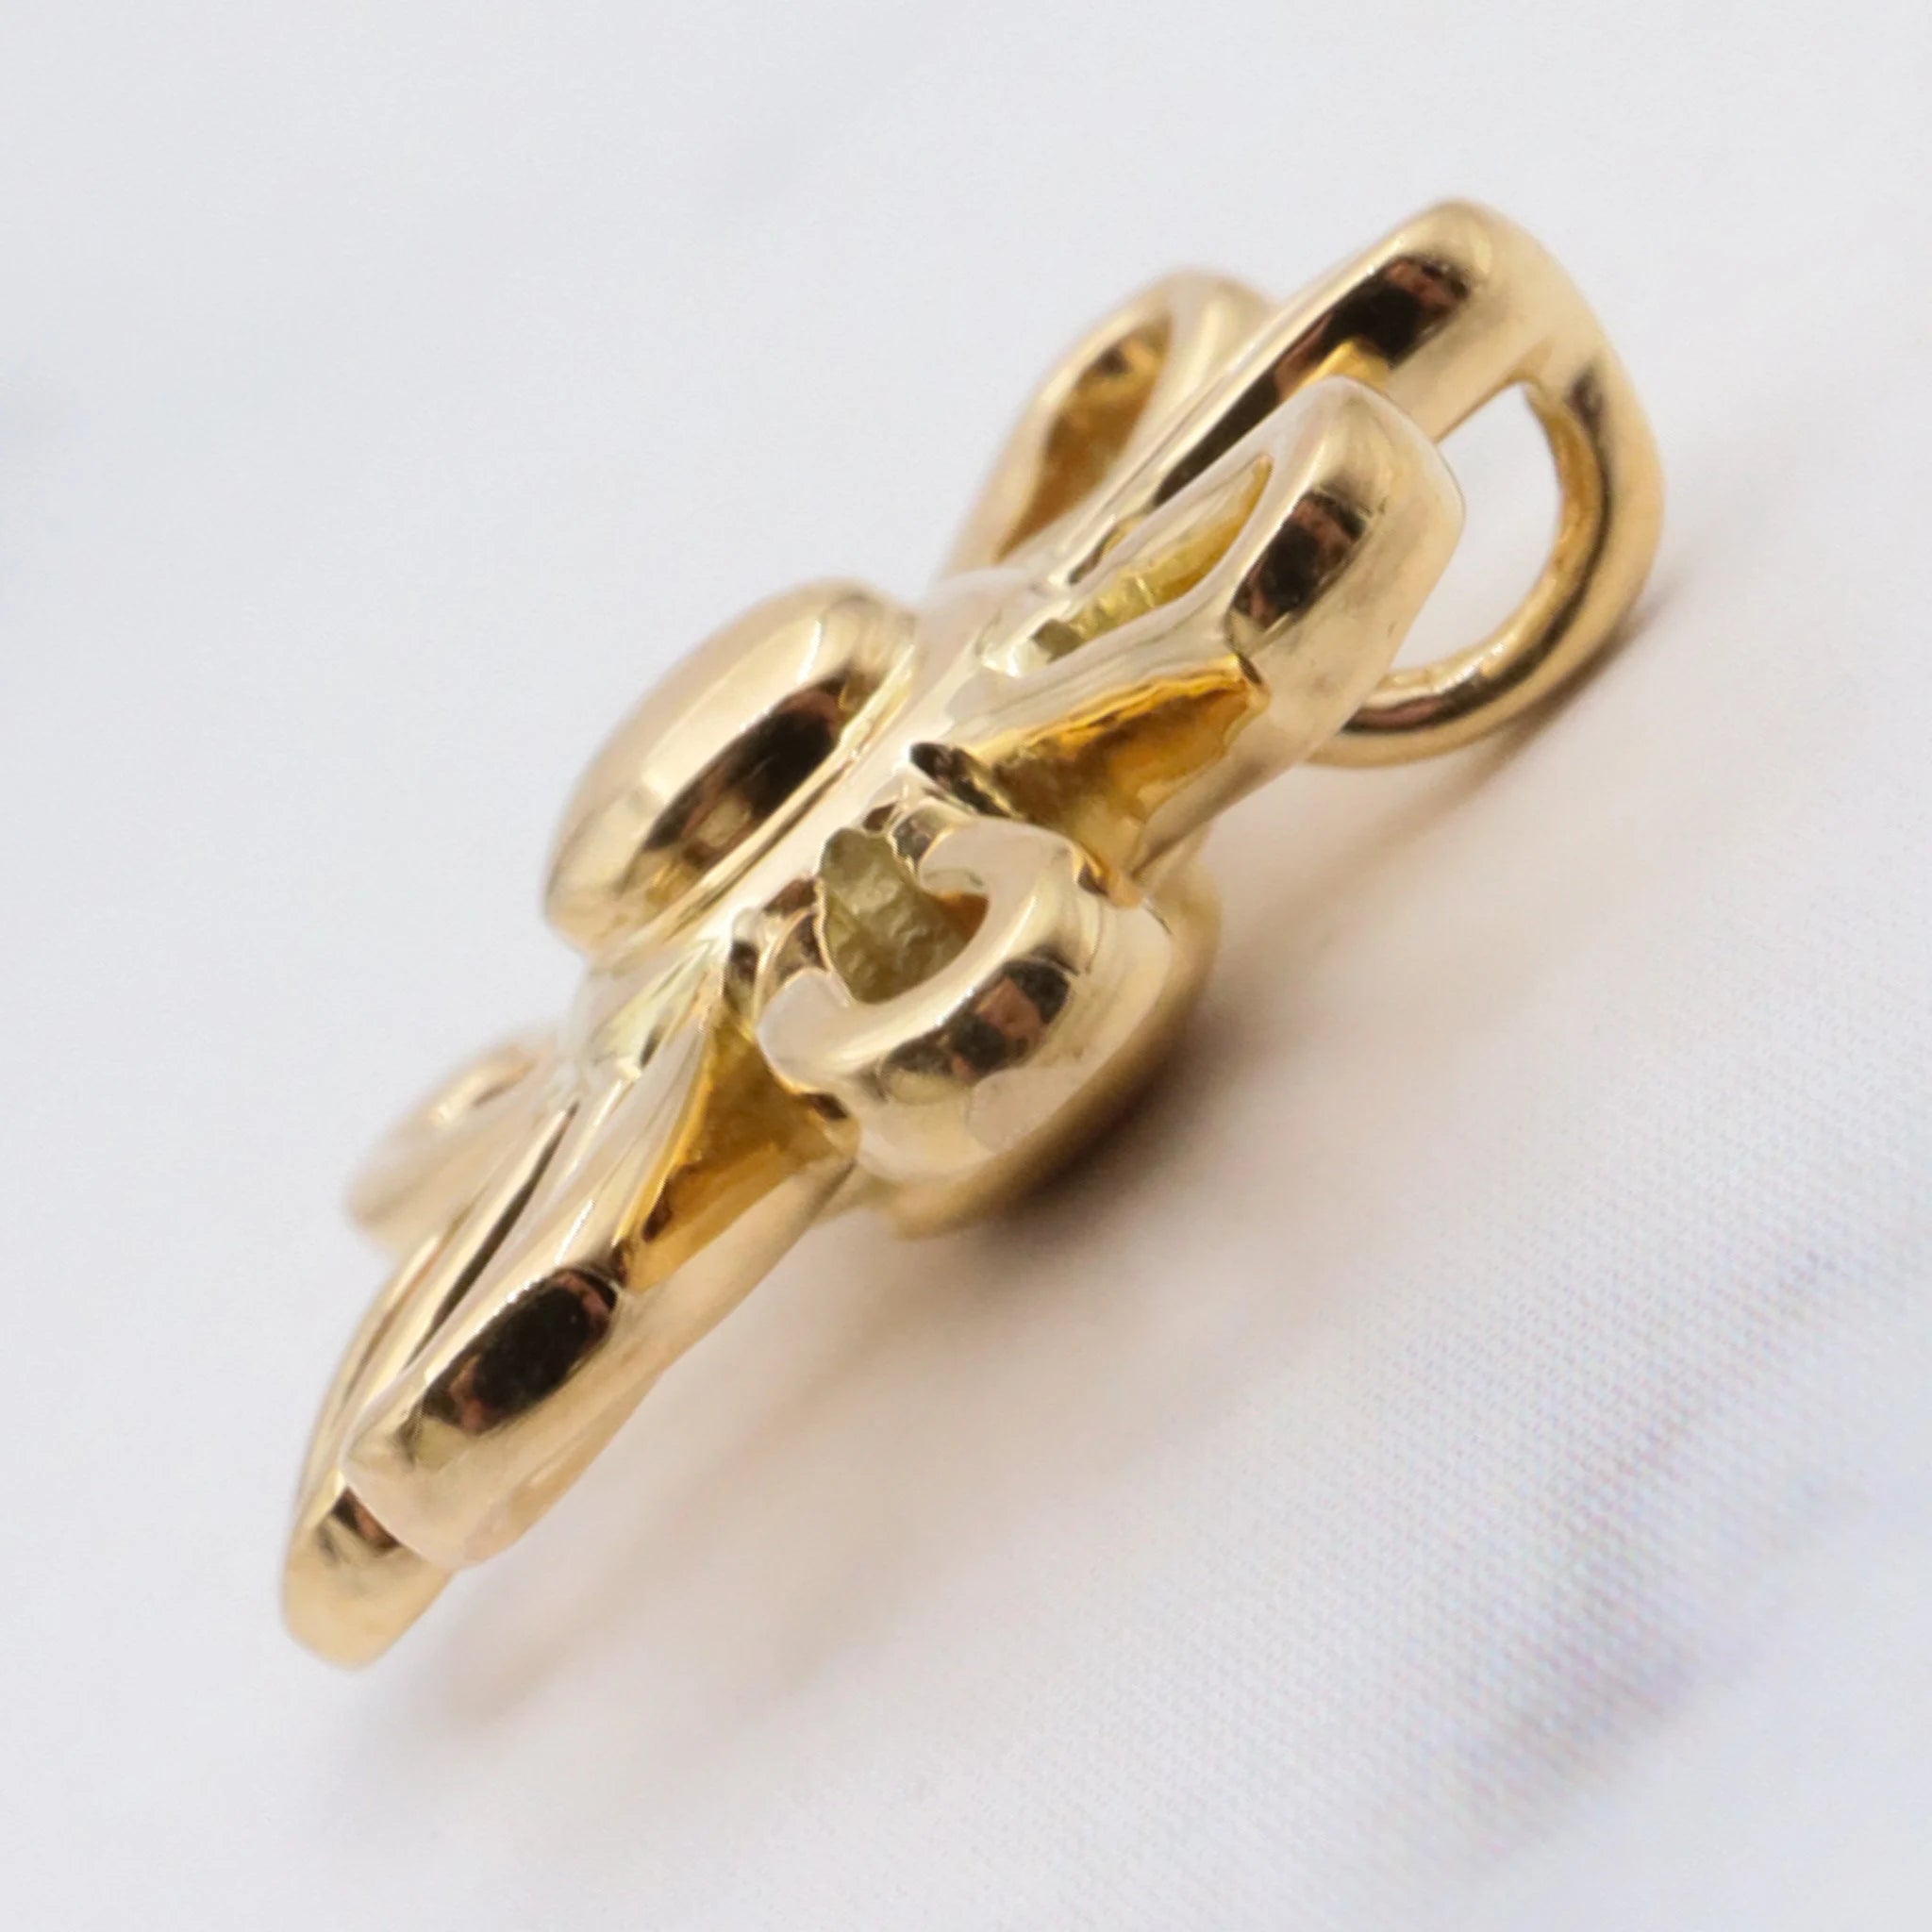 Vintage 18K gold flower pendant